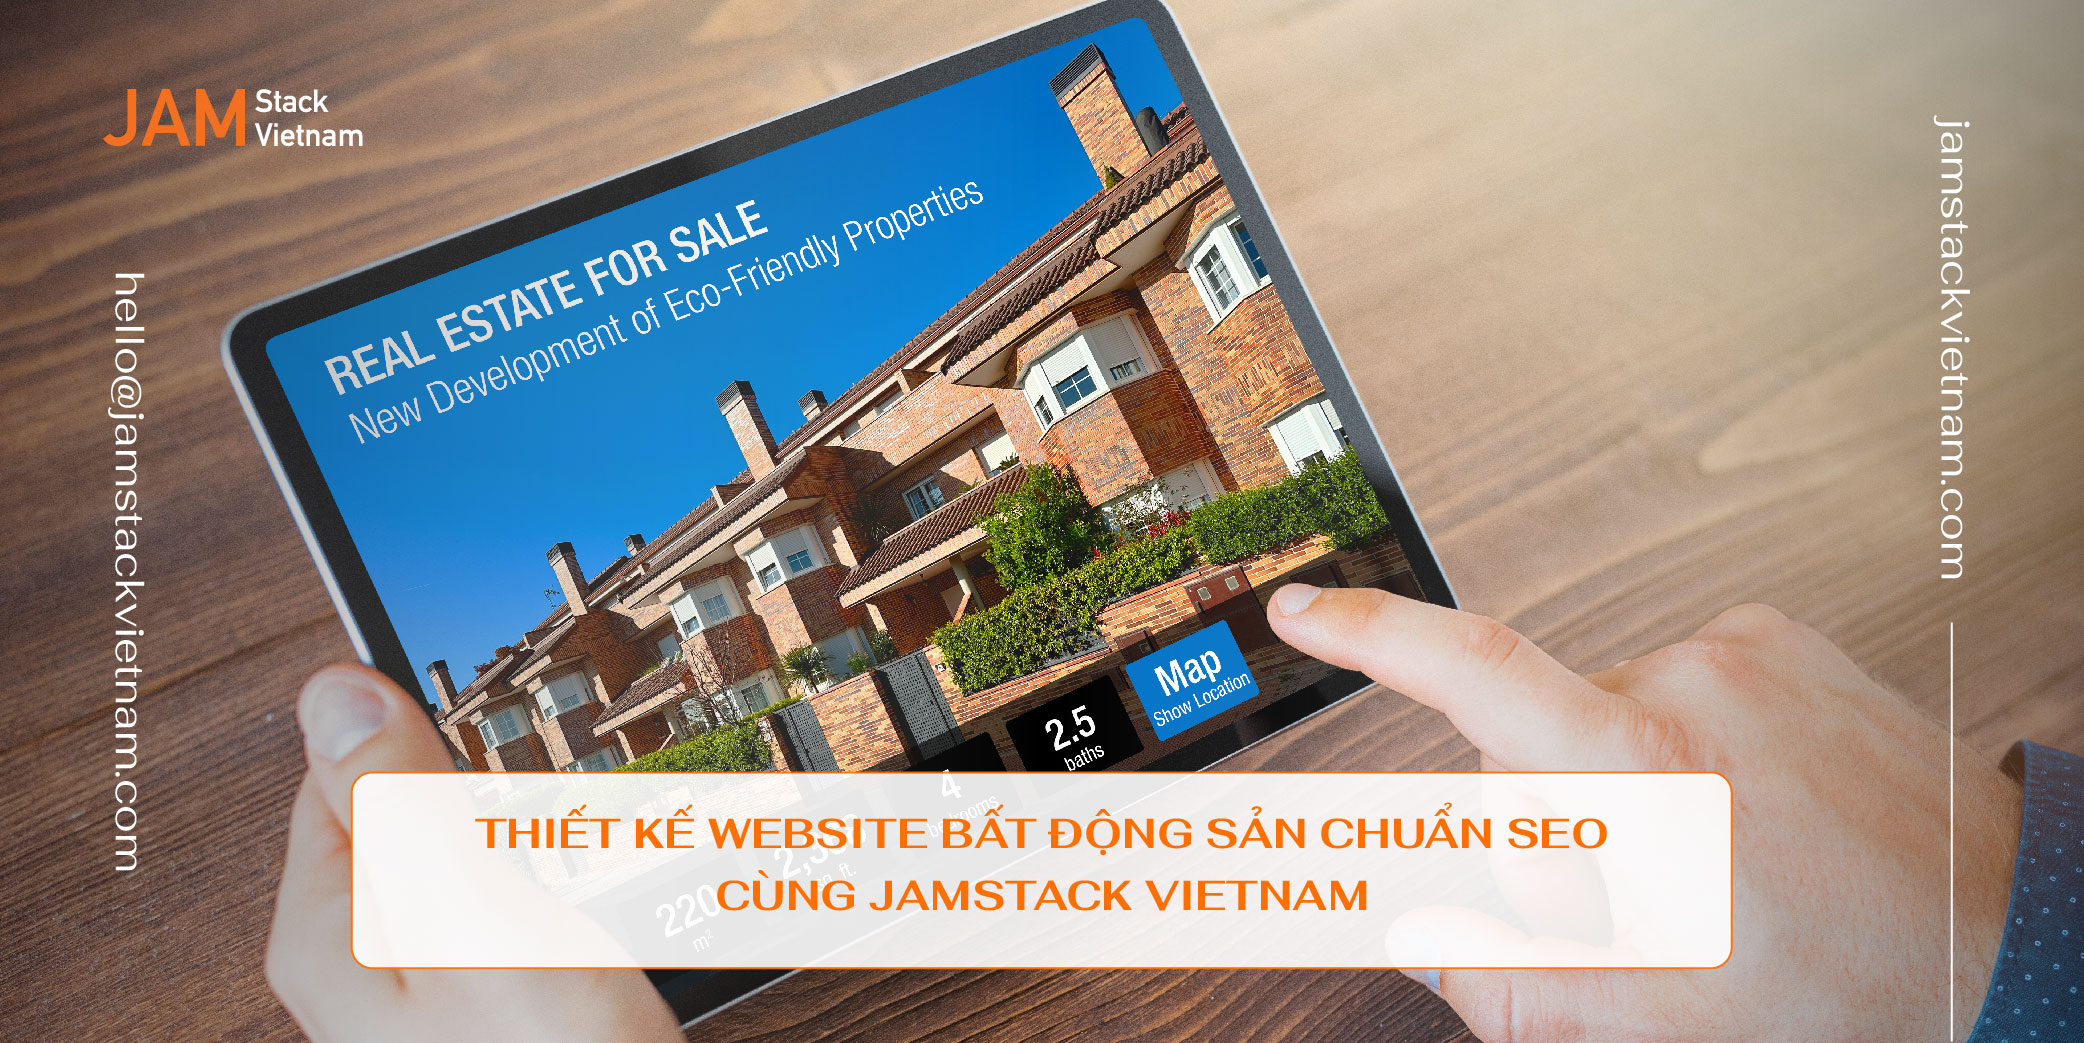 Thiết kế website bất động sản chuẩn SEO cùng JAMstack Vietnam